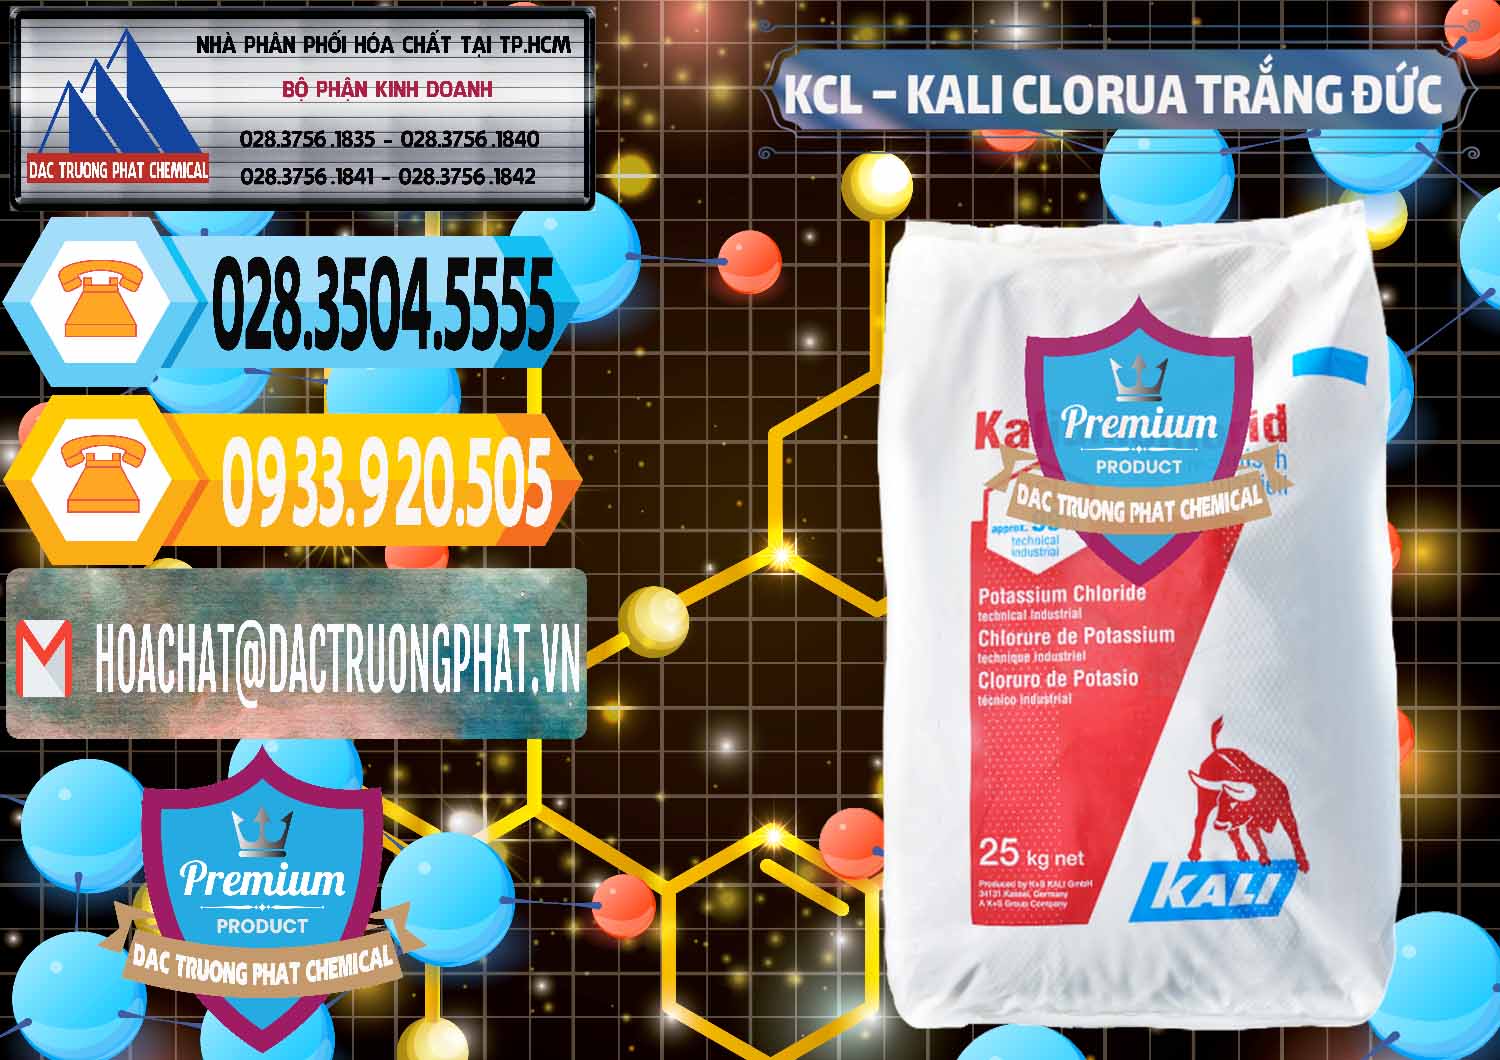 Nơi chuyên cung ứng & bán KCL – Kali Clorua Trắng Đức Germany - 0086 - Nhà cung cấp ( nhập khẩu ) hóa chất tại TP.HCM - hoachattayrua.net